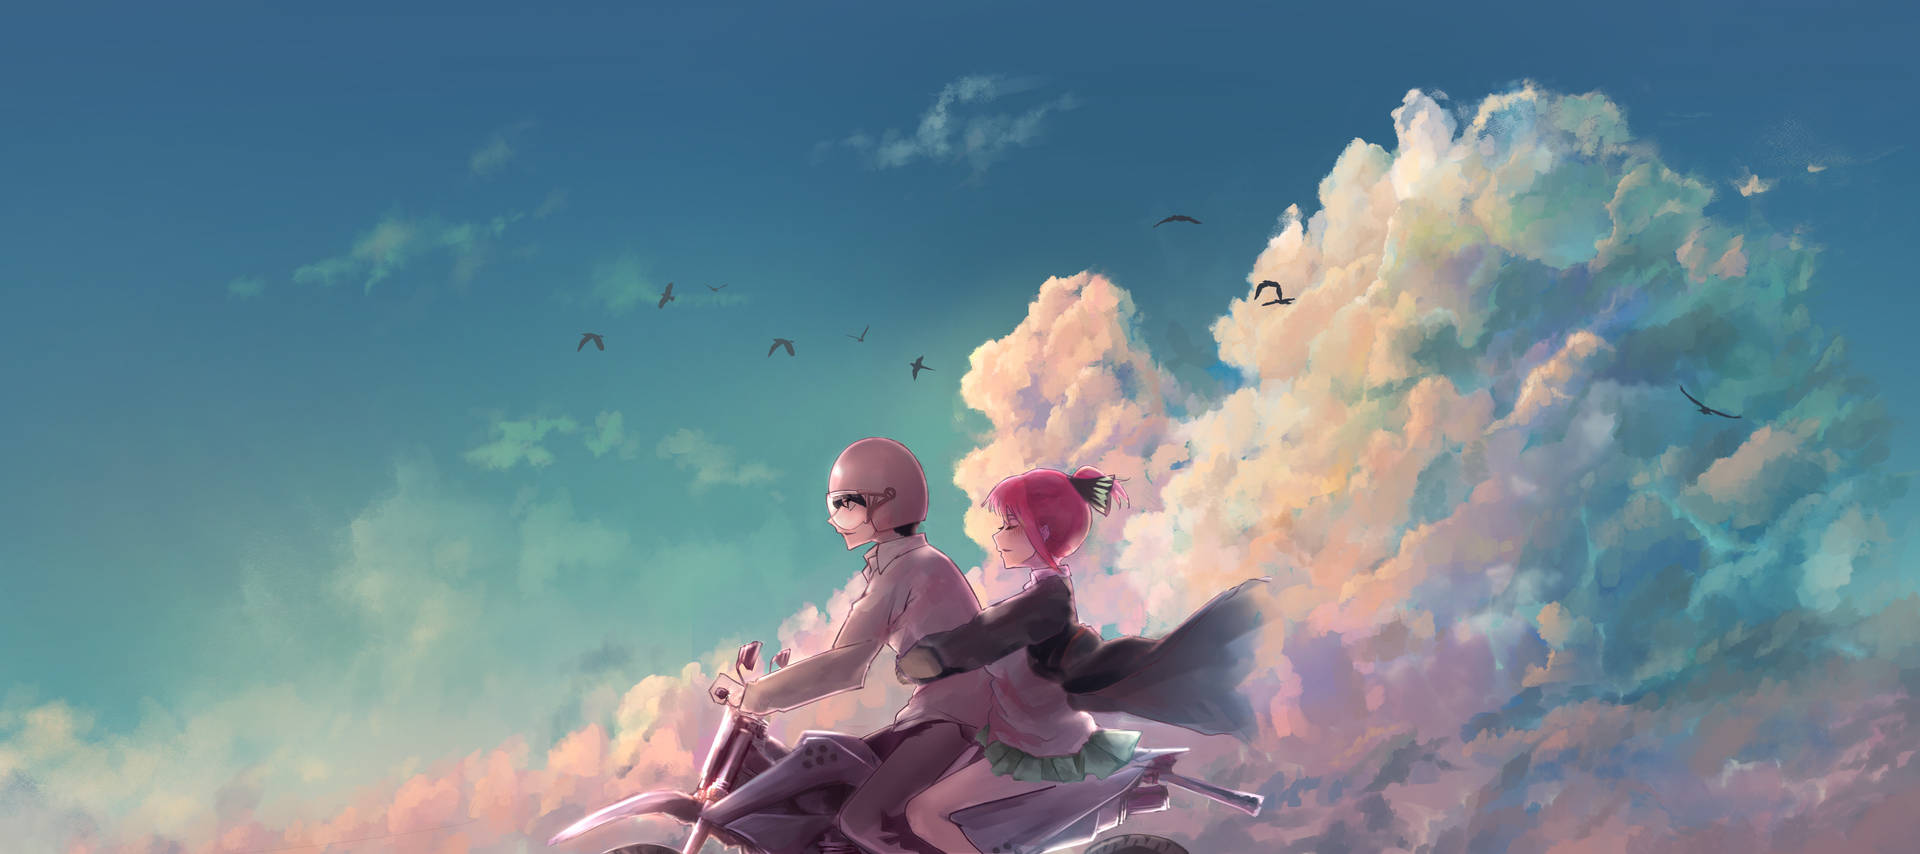 Aesthetic Anime Desktop Boy And Girl On Flying Bike Wallpaper